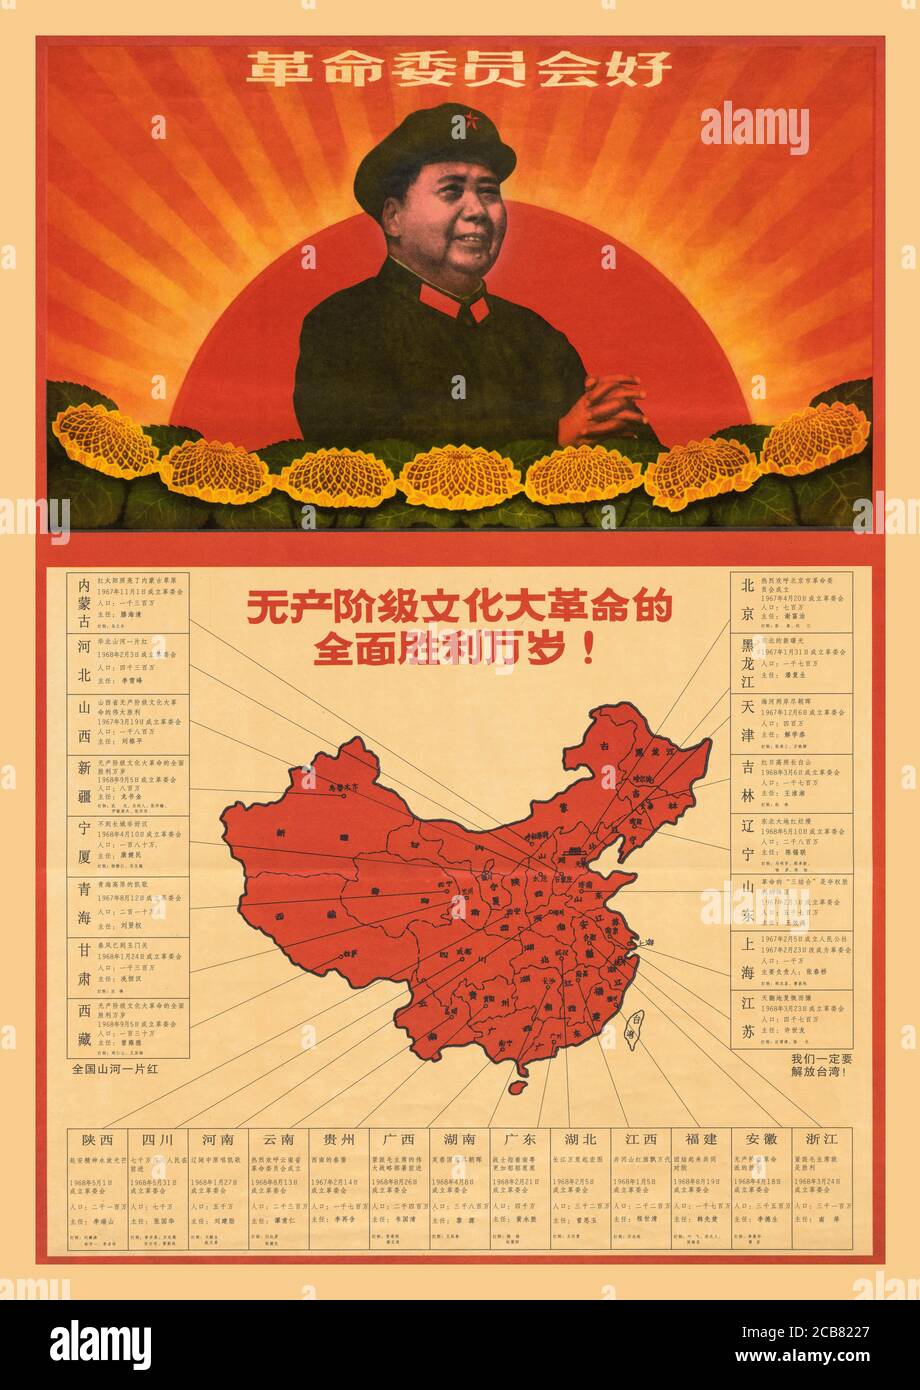 Vintage anni '60 Cina Rivoluzione culturale cinese Mappa del manifesto Propaganda celebrando il 5 settembre 1968, quando il movimento di massa 'potere di Seize' della Rivoluzione culturale è riuscito a sostituire i governi stabiliti con 'Comitati rivoluzionari' nelle ultime due delle 29 regioni amministrative cinesi, le province del Tibet e Xinjiang. Nella 'tempesta di gennaio' del 1967, le forze della rivoluzione culturale rovesciarono il governo di Shanghai sostituendo con una 'comune del popolo'. La successiva approvazione del presidente Mao del rovesciamento ha iniziato un movimento violento di organizzazioni rivoluzionarie di massa per 'dare forza' Foto Stock